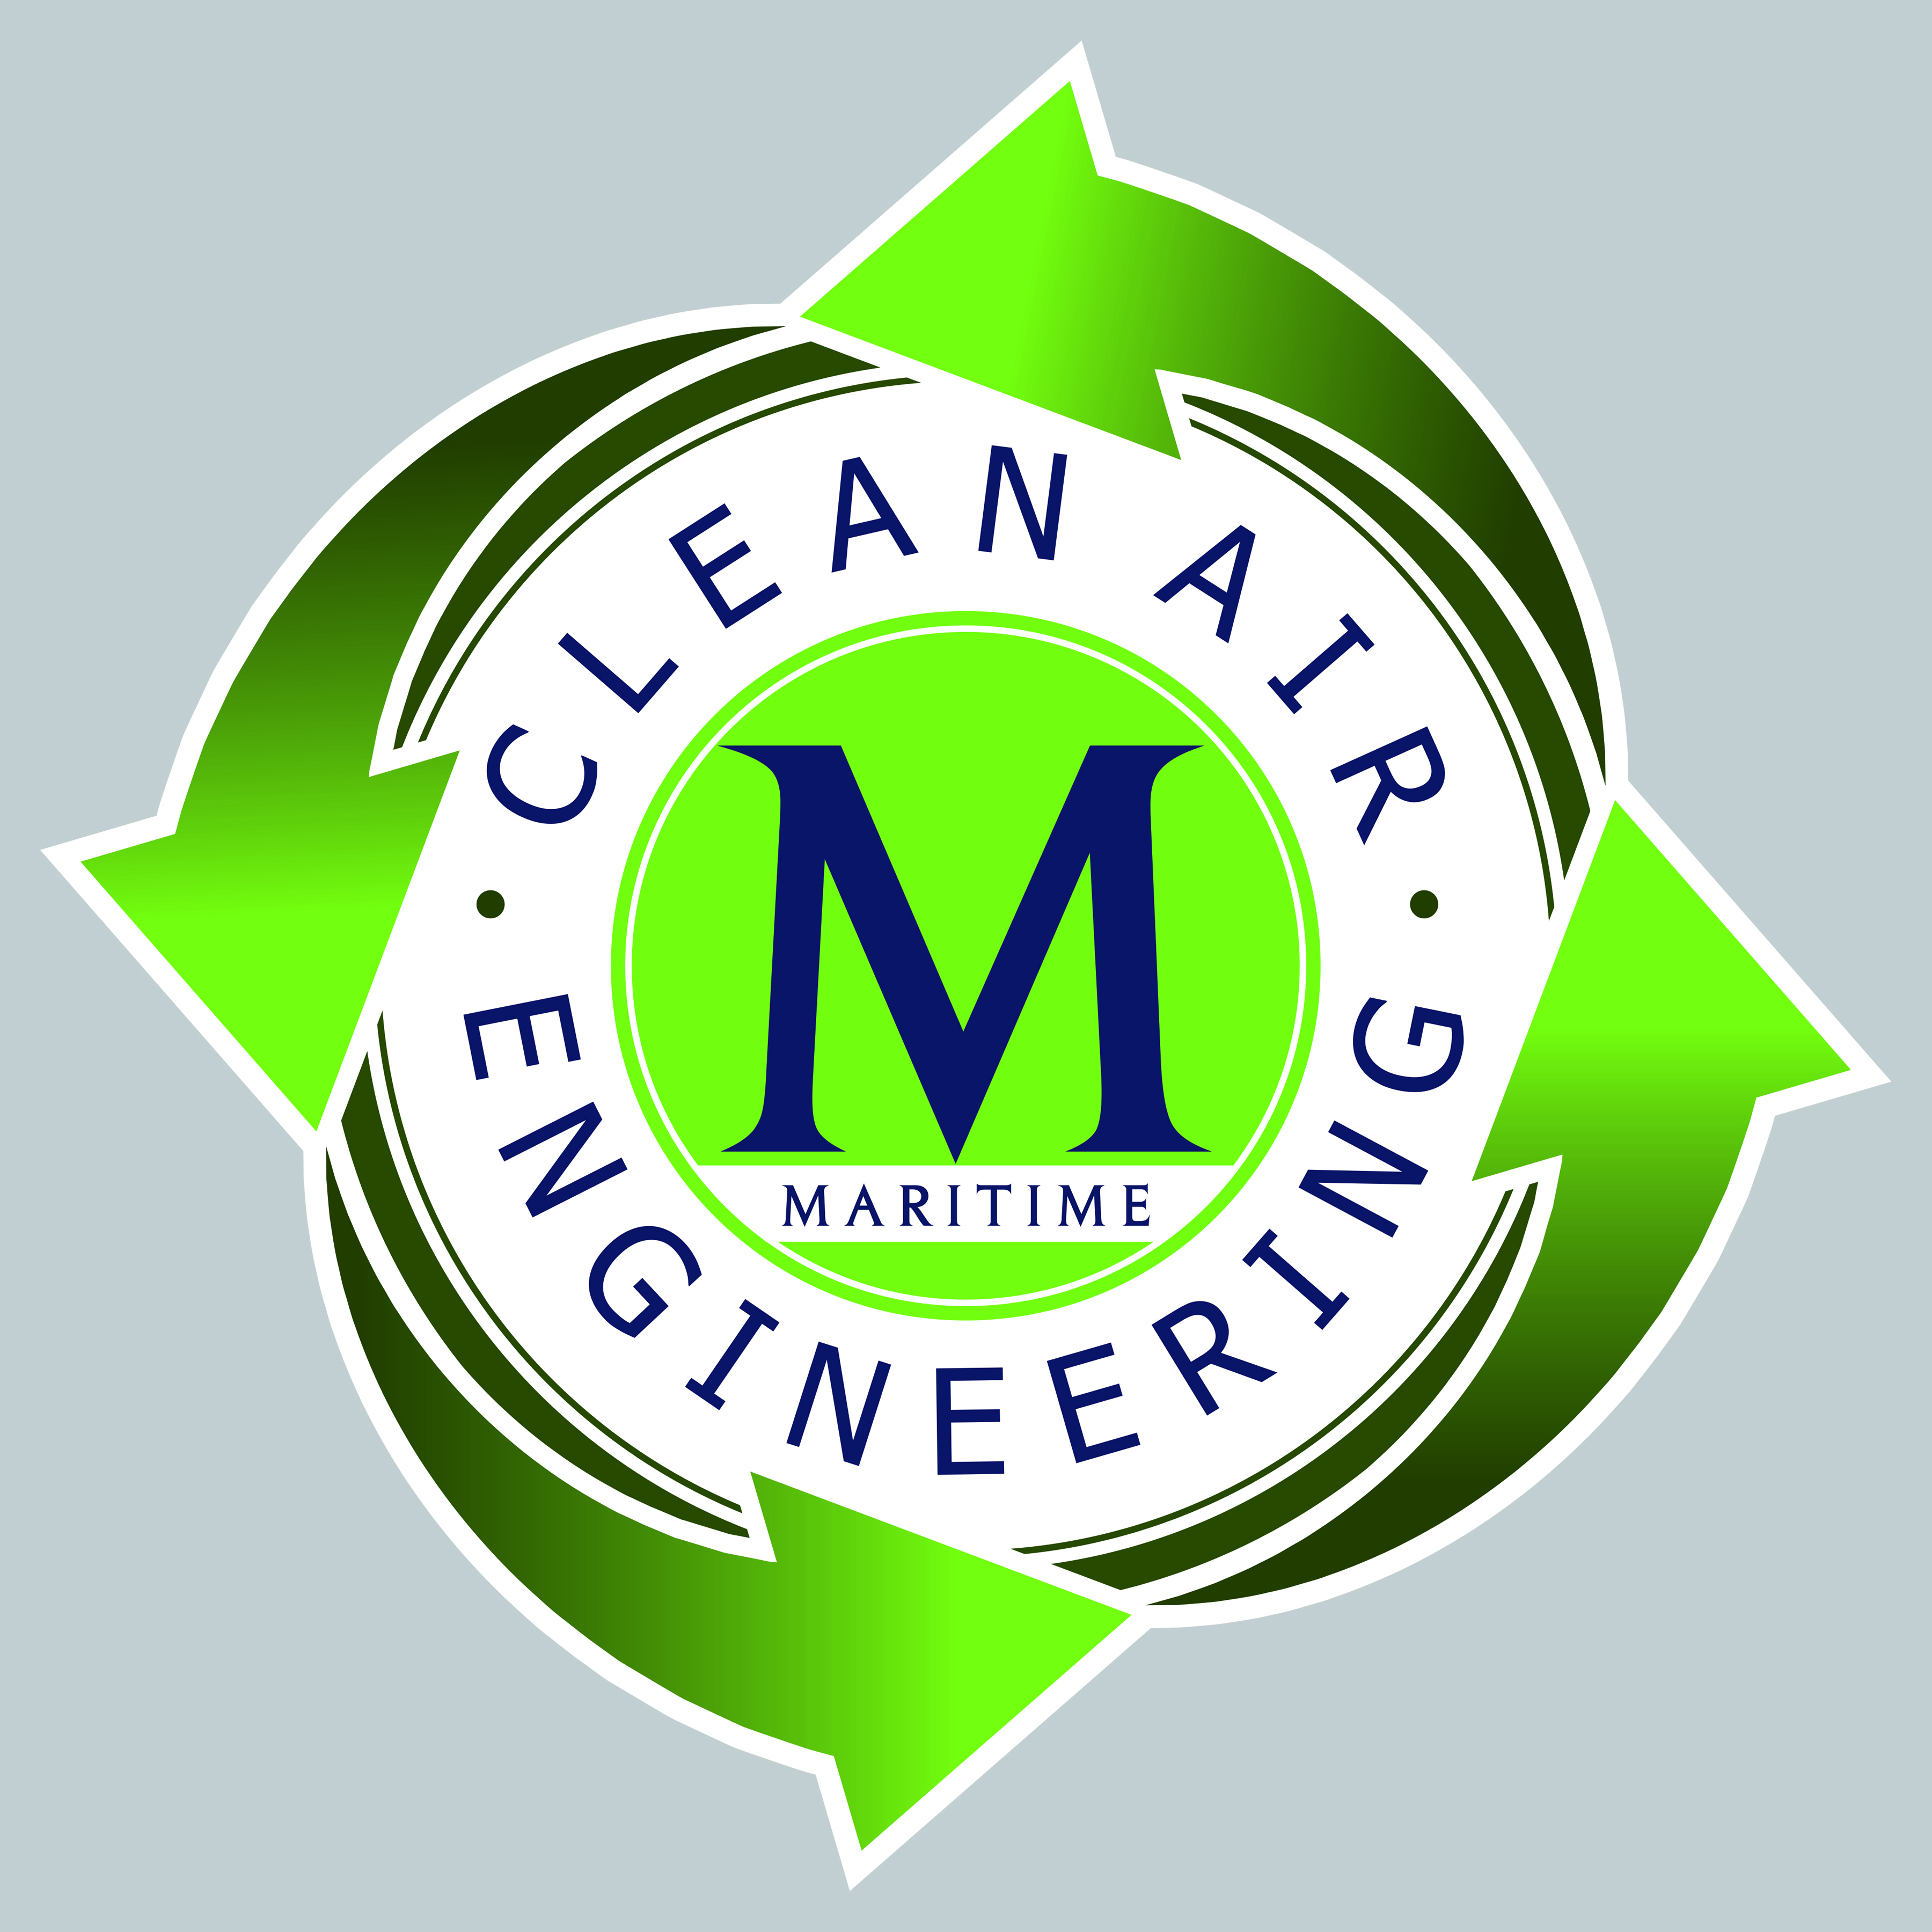 Clean Air Engineering Maritime